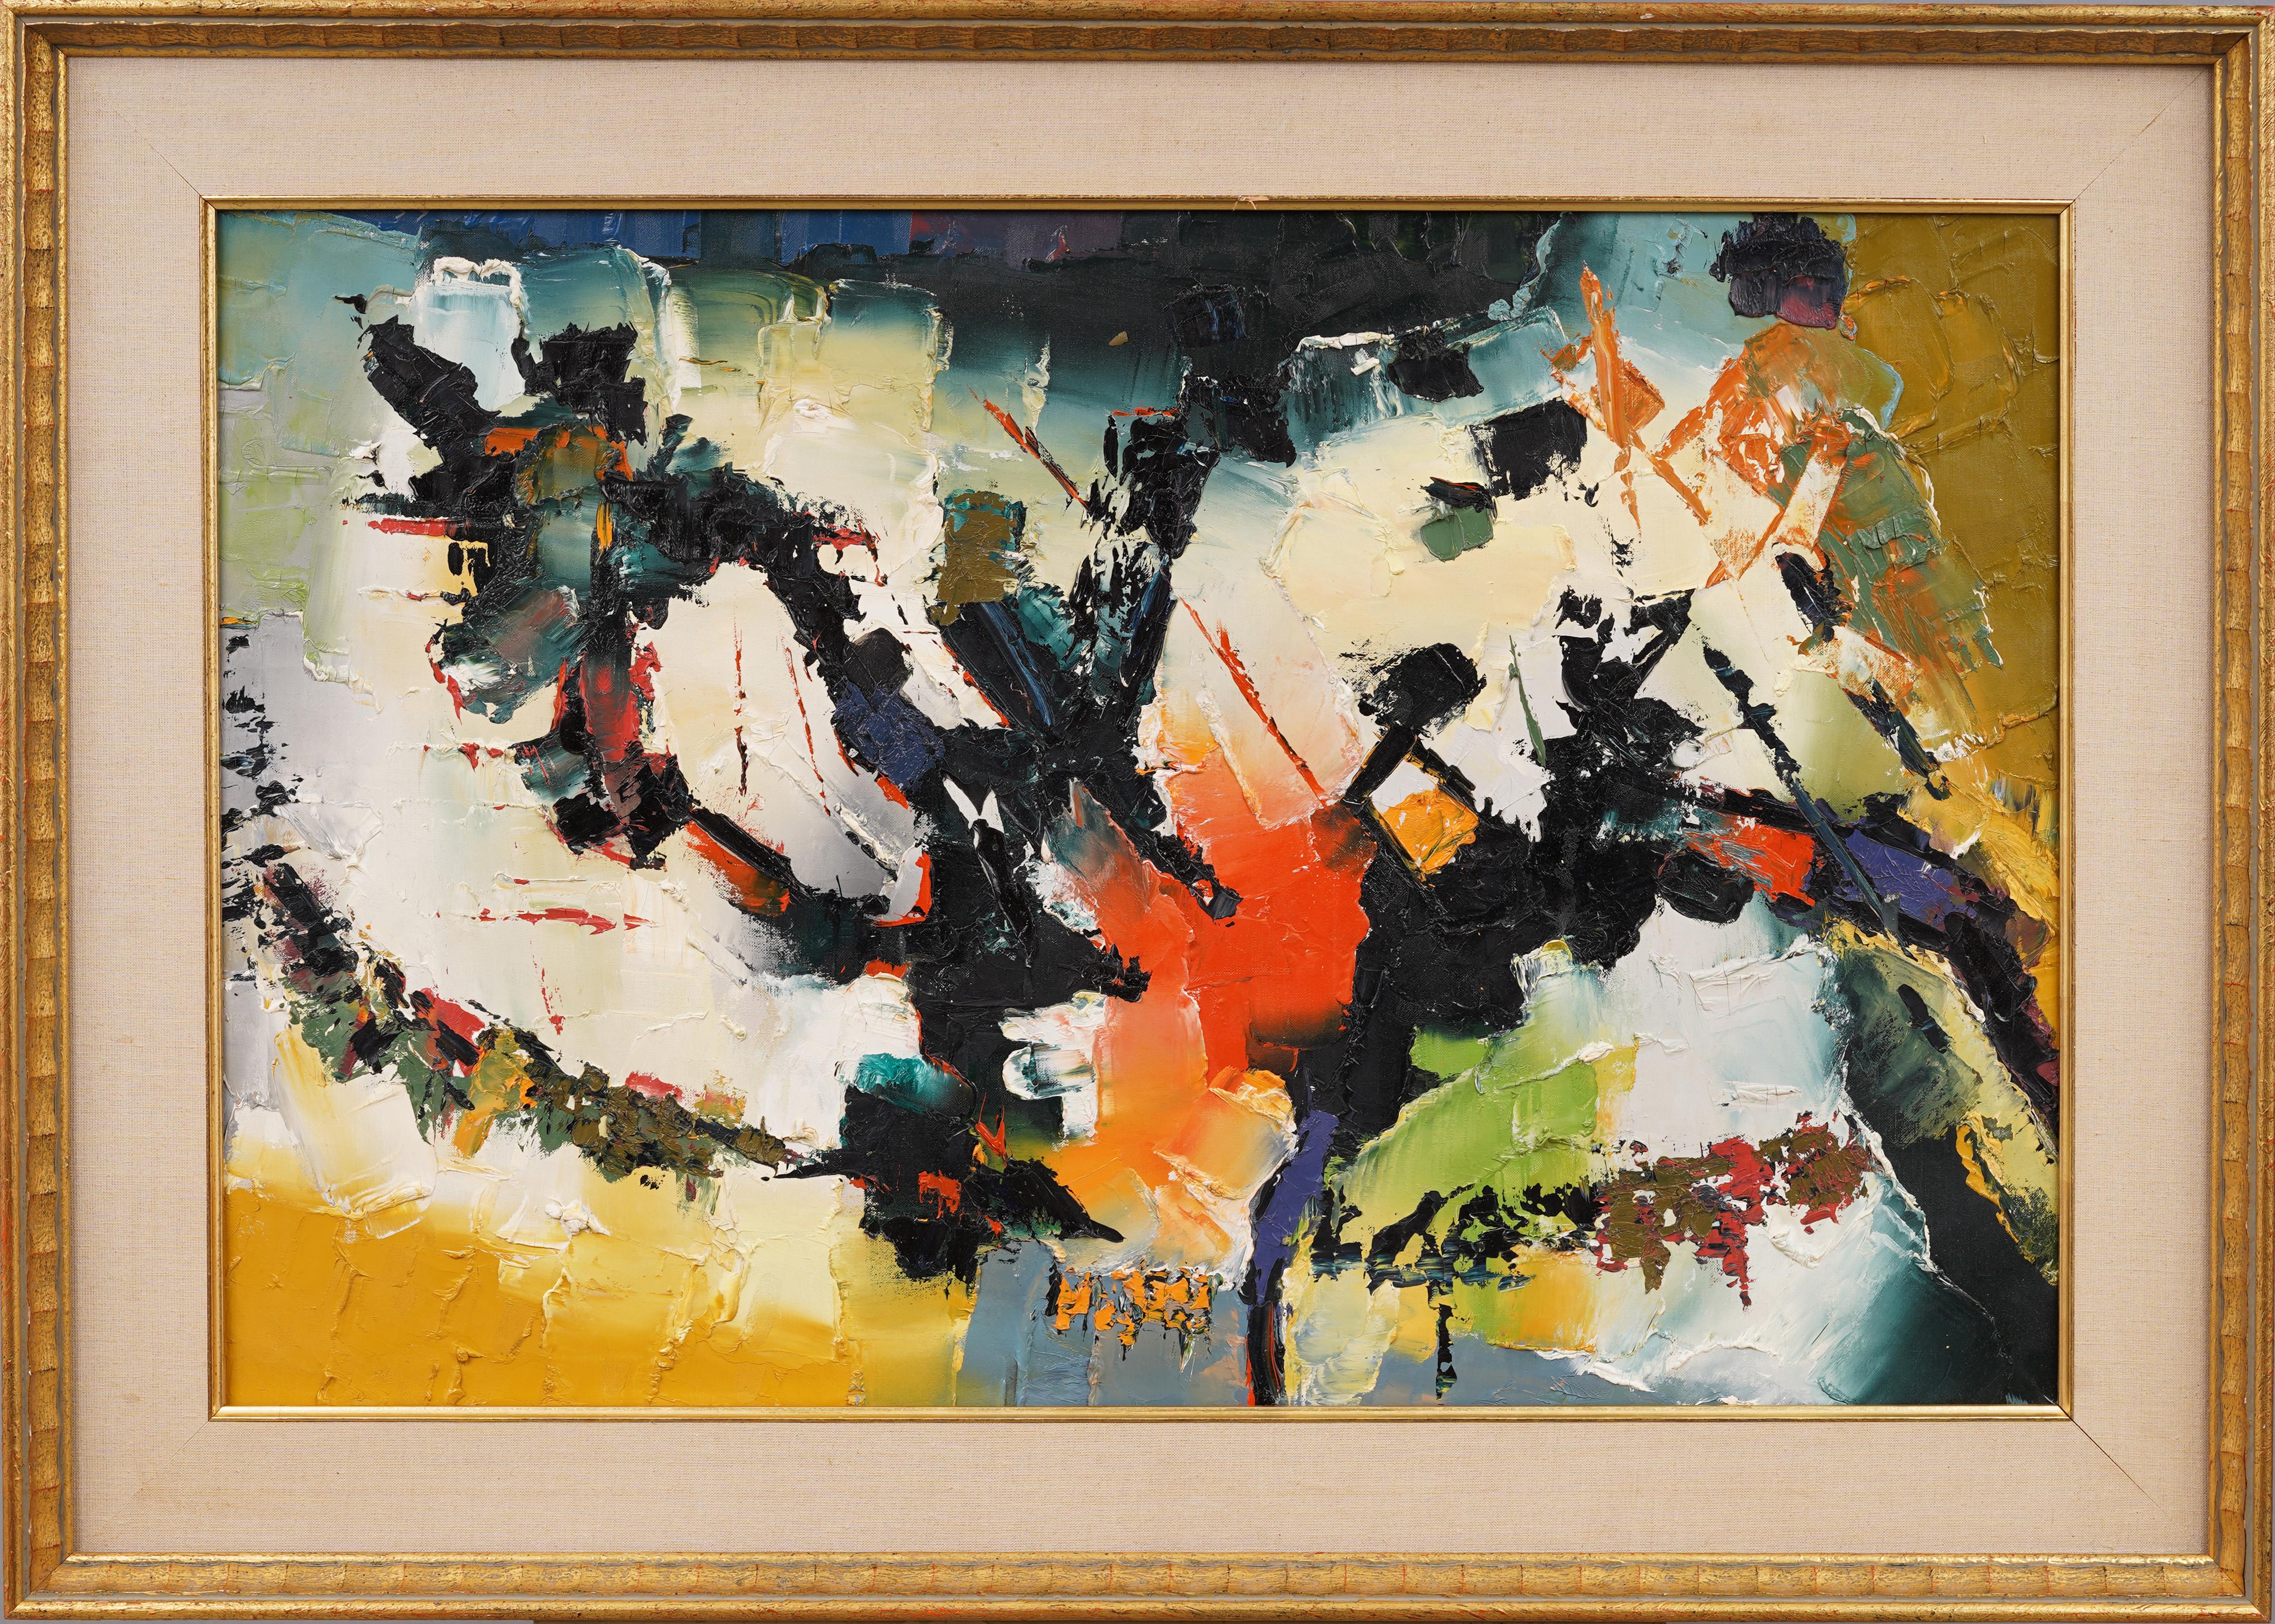 Ancienne peinture à l'huile expressionniste abstraite moderniste américaine encadrée - Expressionnisme abstrait Painting par Unknown